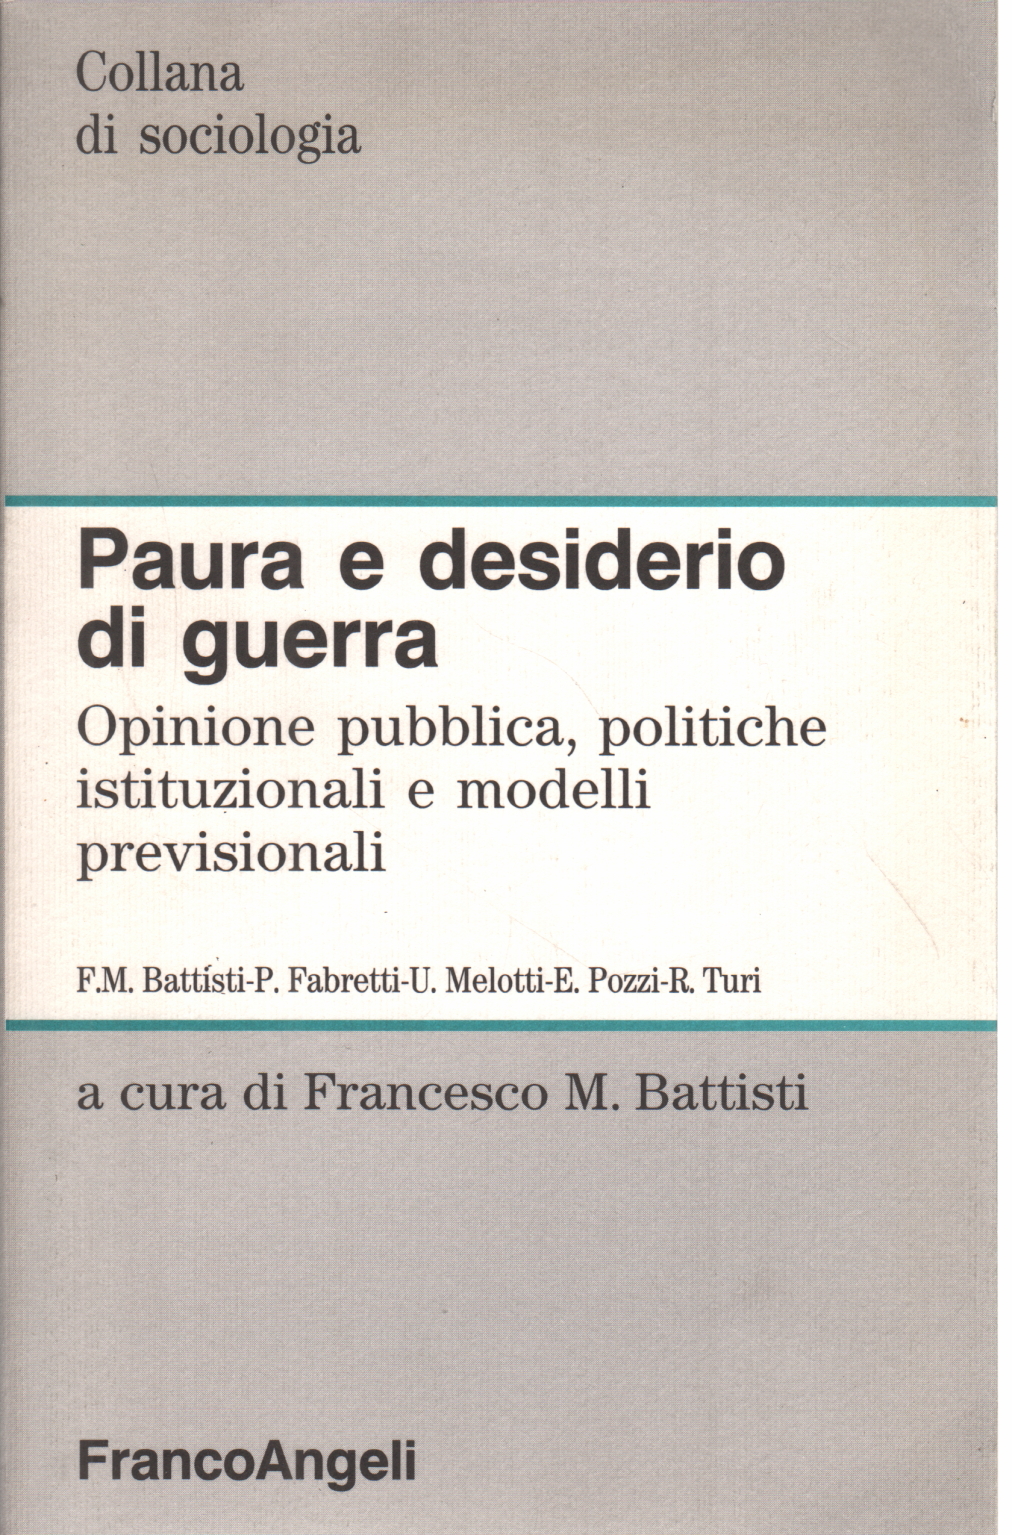 Angst und der wunsch nach krieg, Francesco M. Battisti